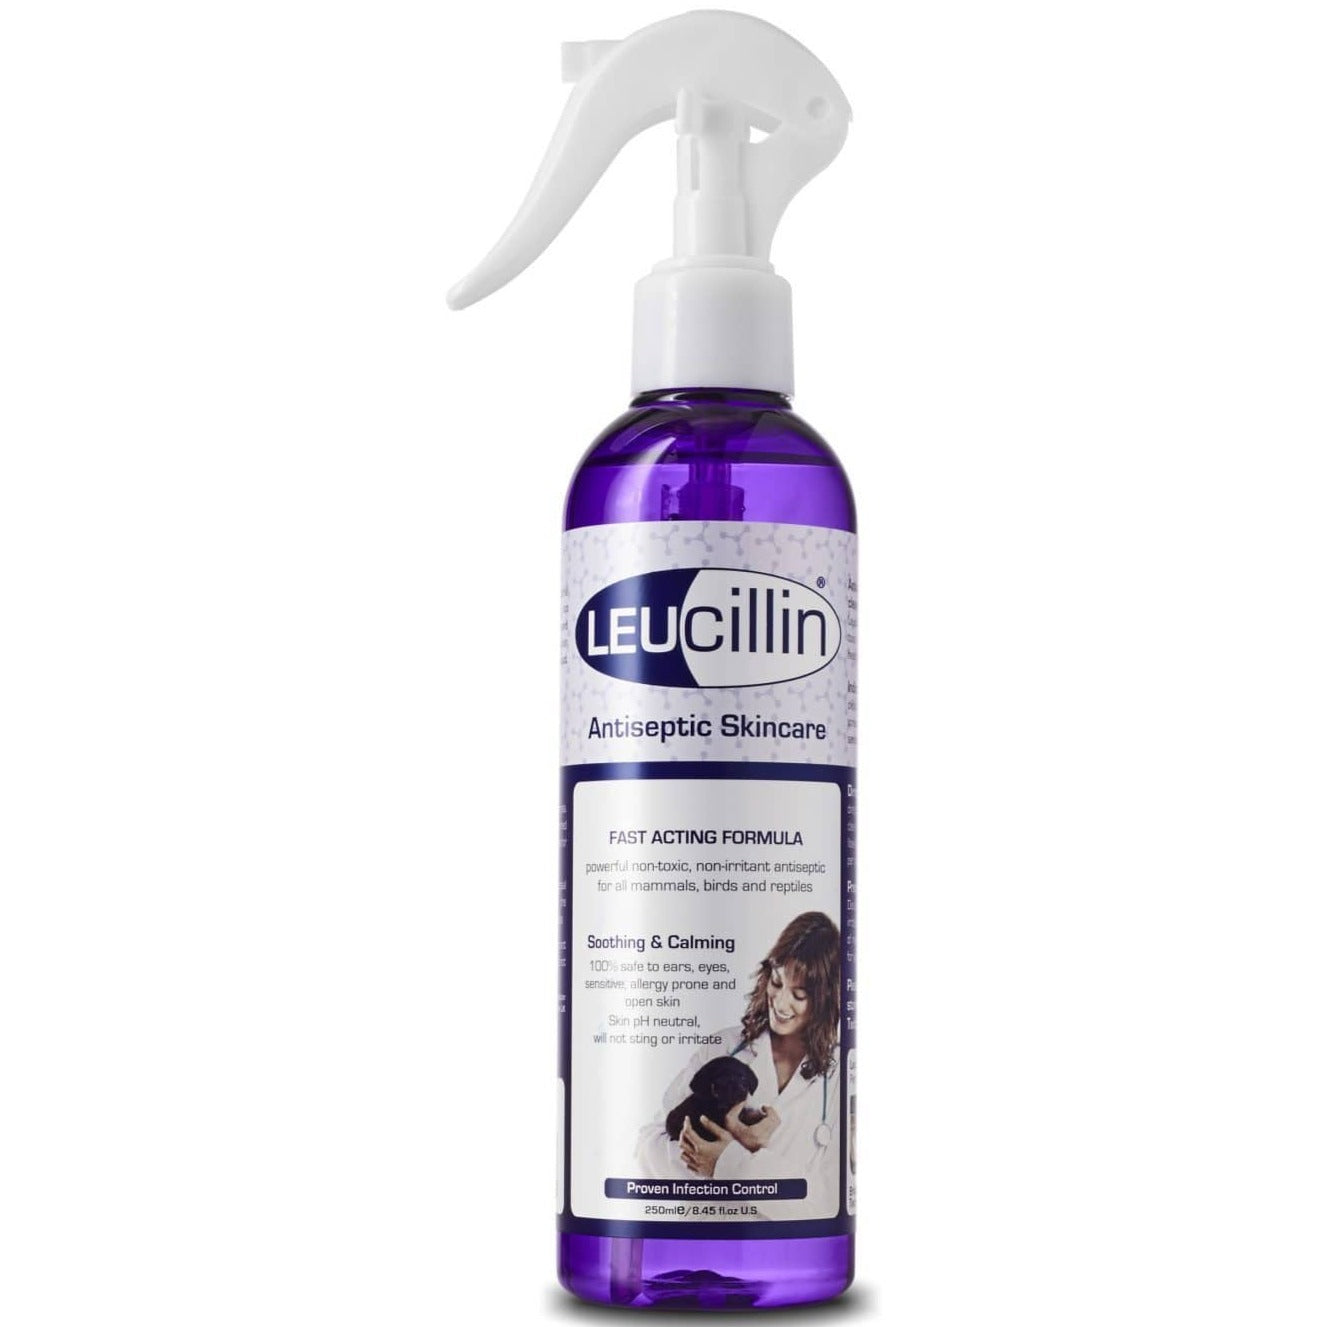 Spray antiséptico de leucilina para perros